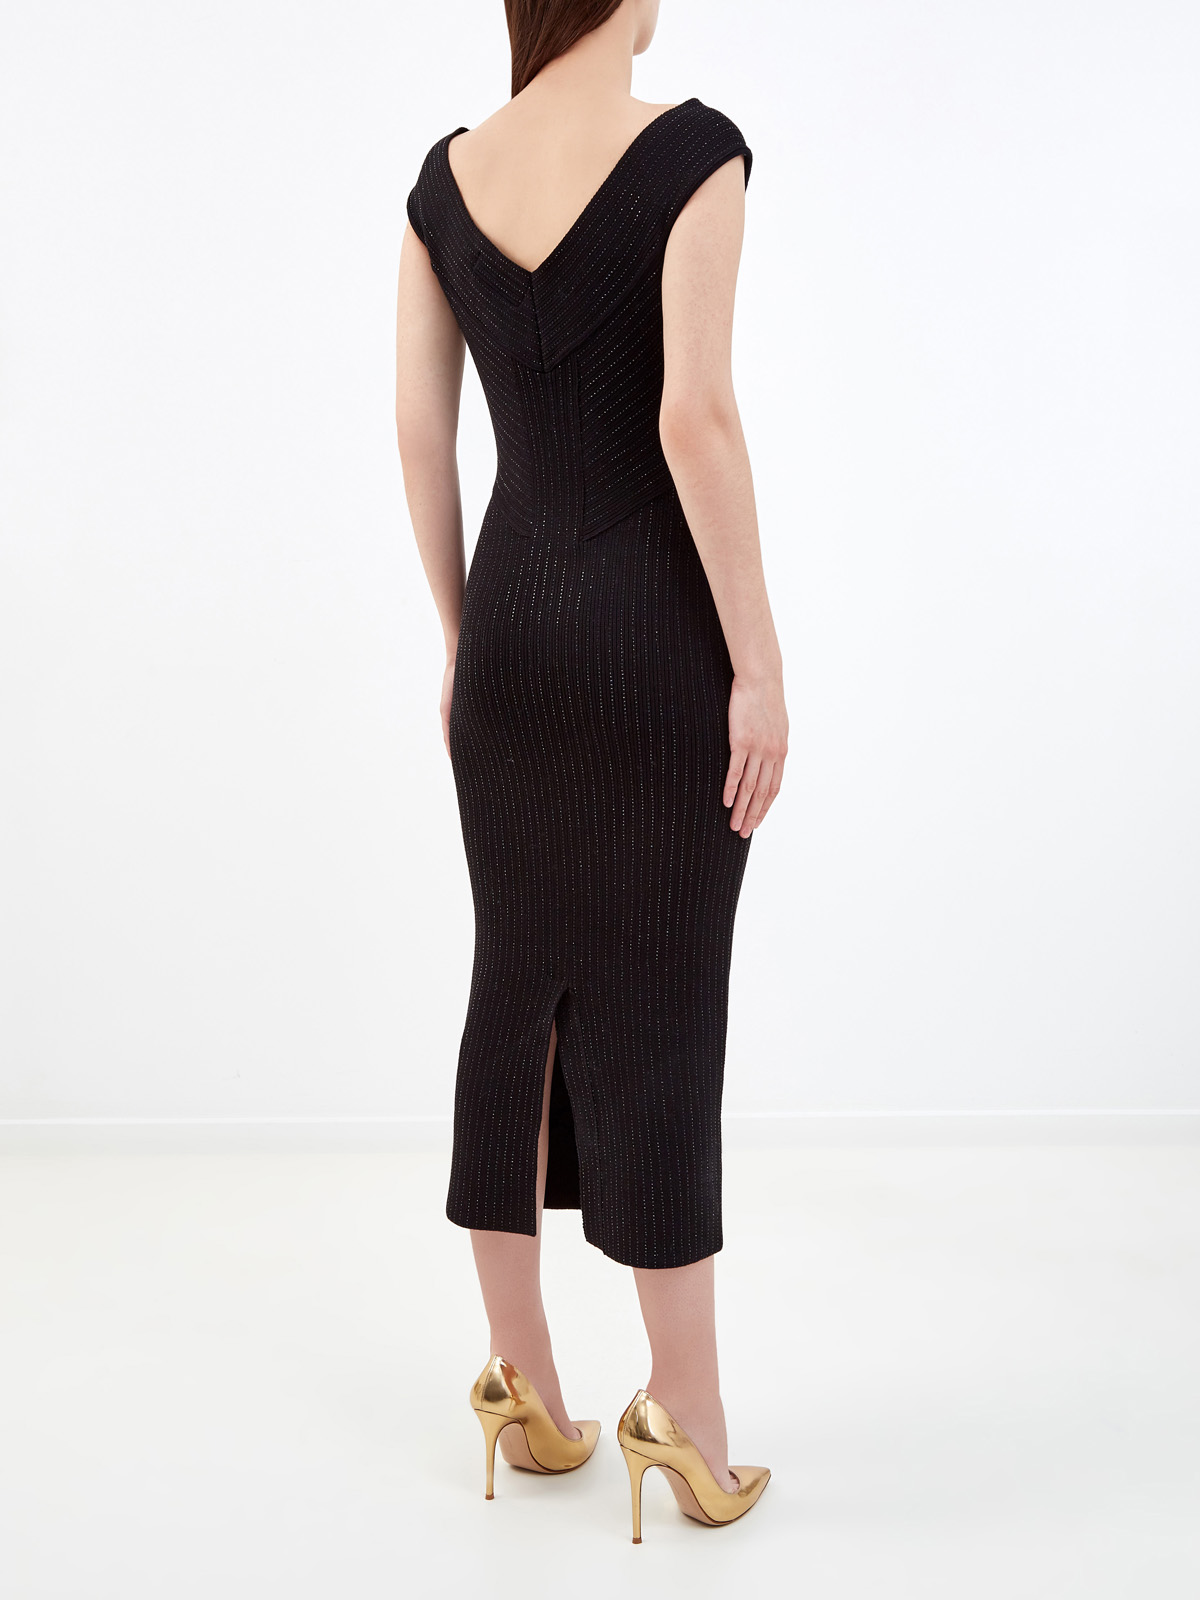 Платье-футляр из плотной пряжи с микро-кристаллами ERMANNO SCERVINO, цвет черный, размер 44 - фото 4